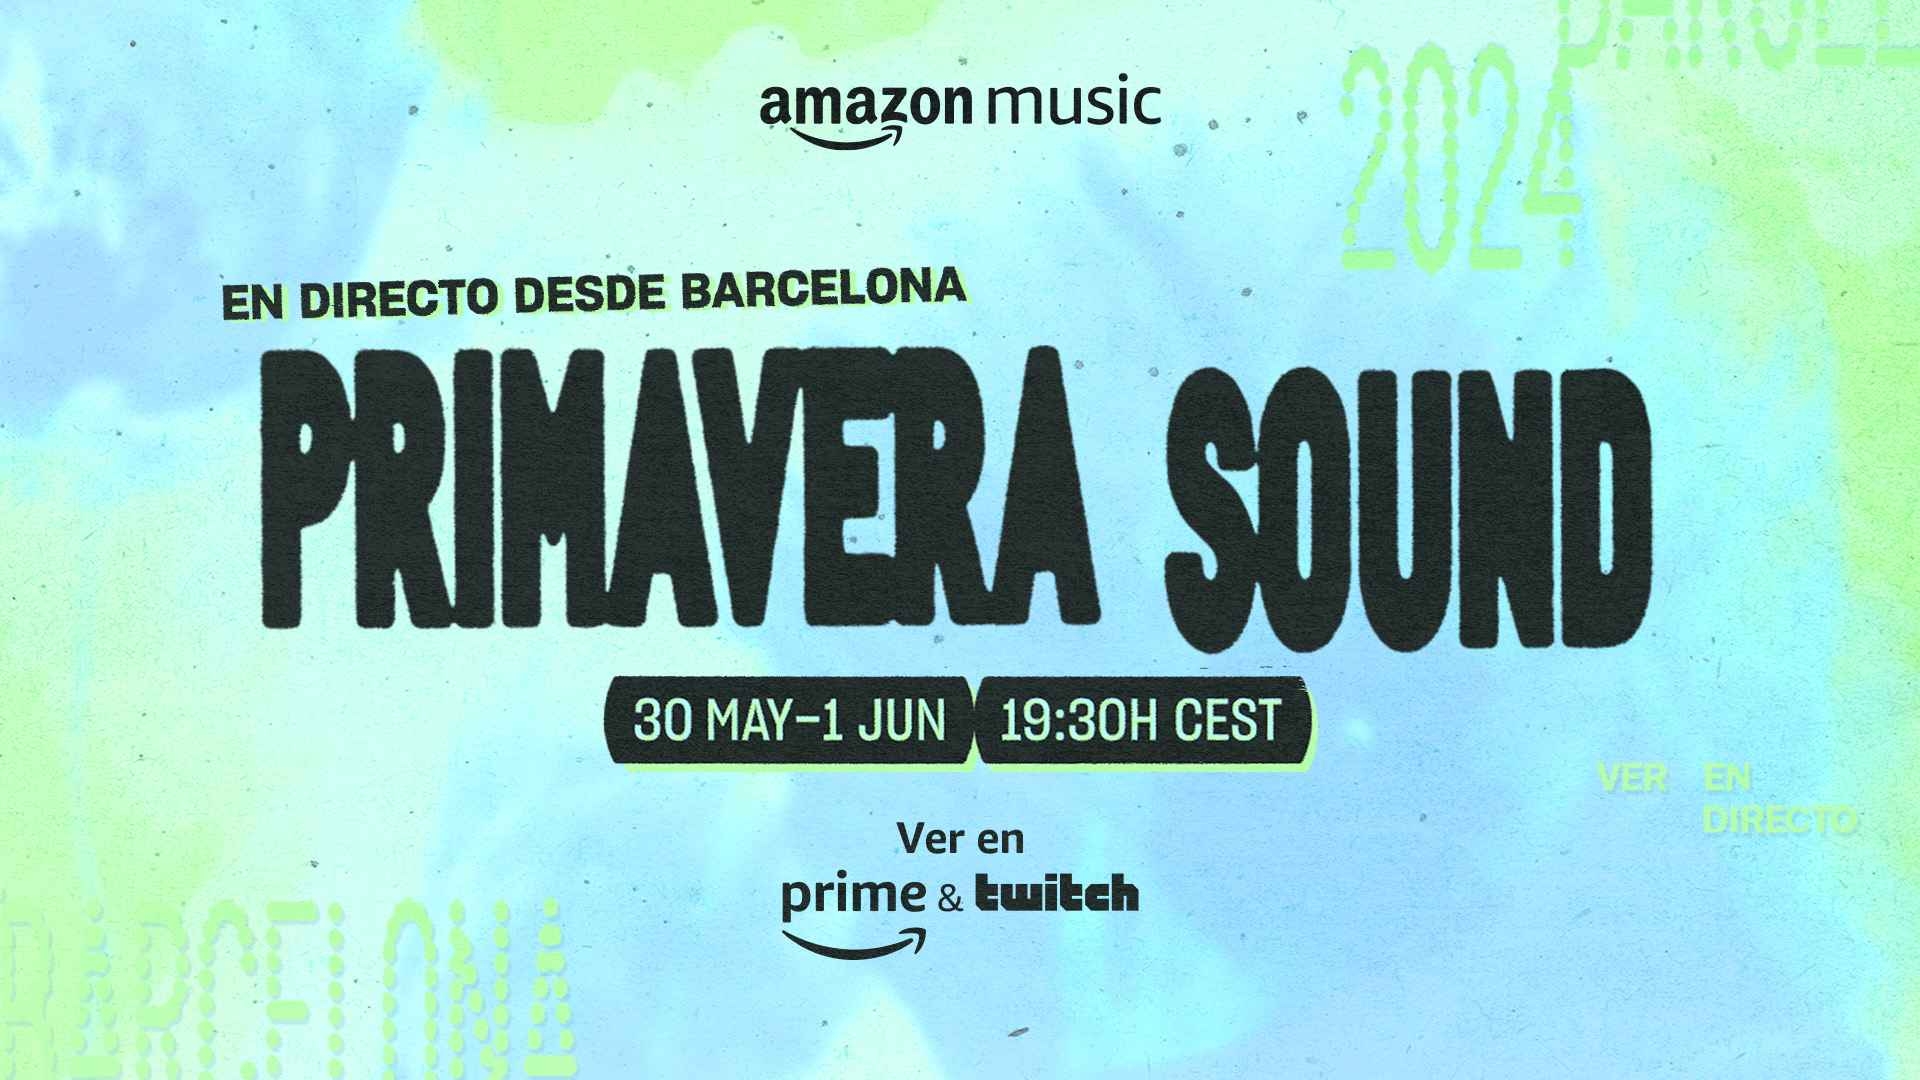 Amazon Music kooperiert erneut mit Primavera Sound